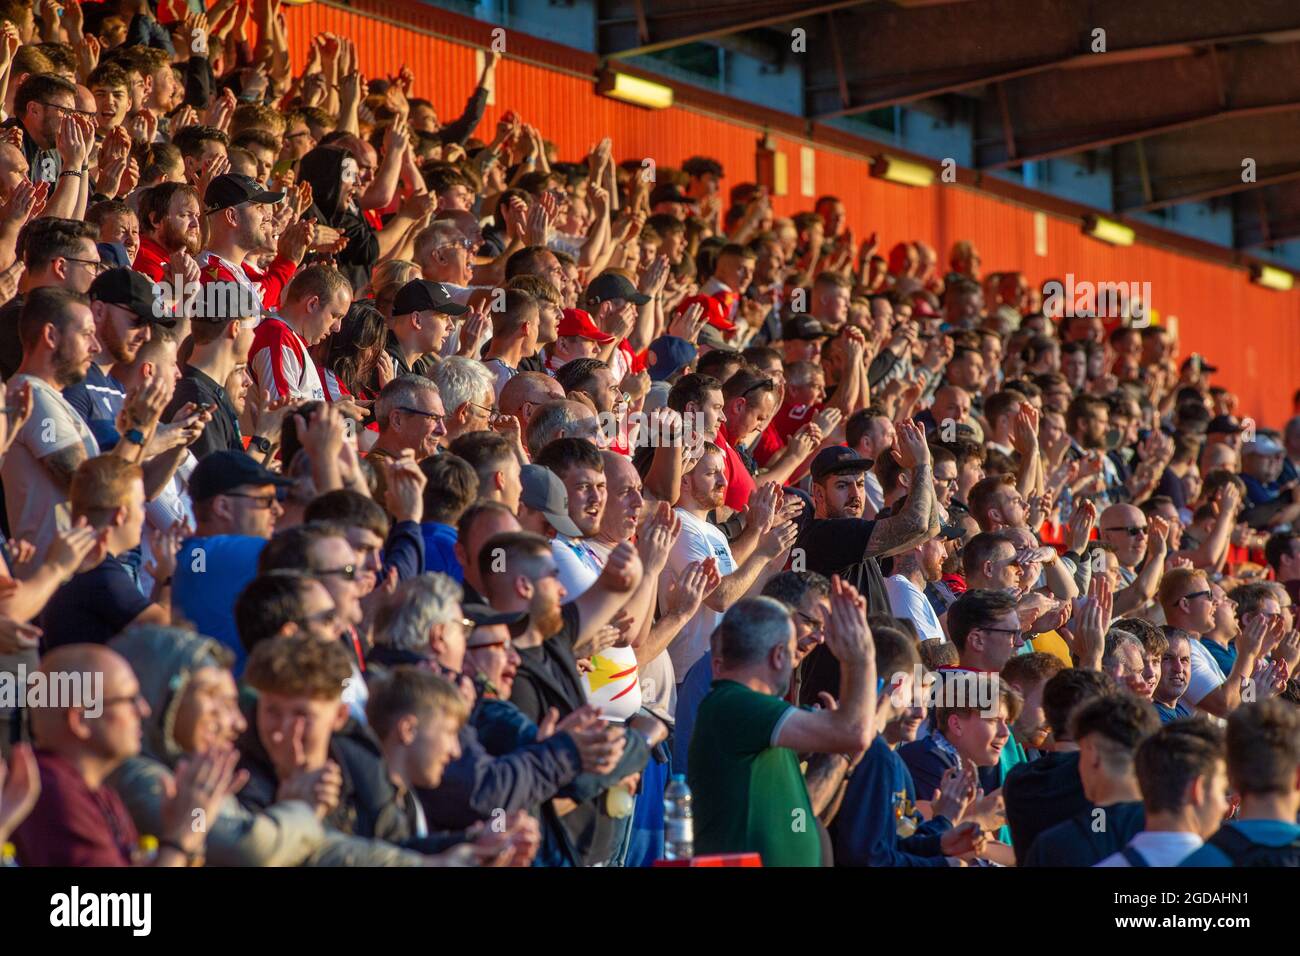 Aficionados al fútbol o al fútbol aplaudiendo en un estadio iluminado por el sol Foto de stock